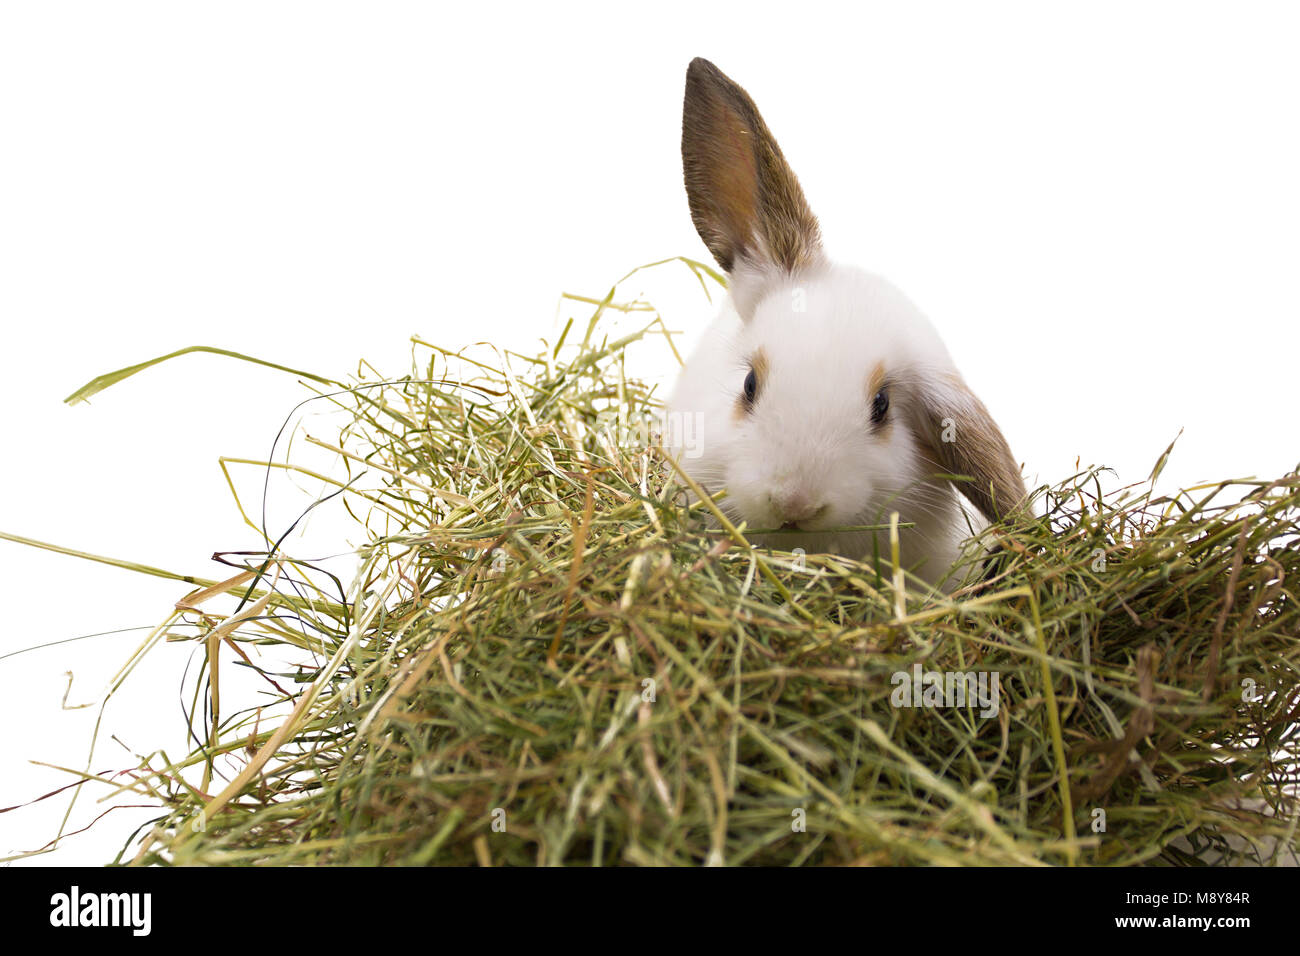 White rabbit eats hay. Isolated on white background. Stock Photo